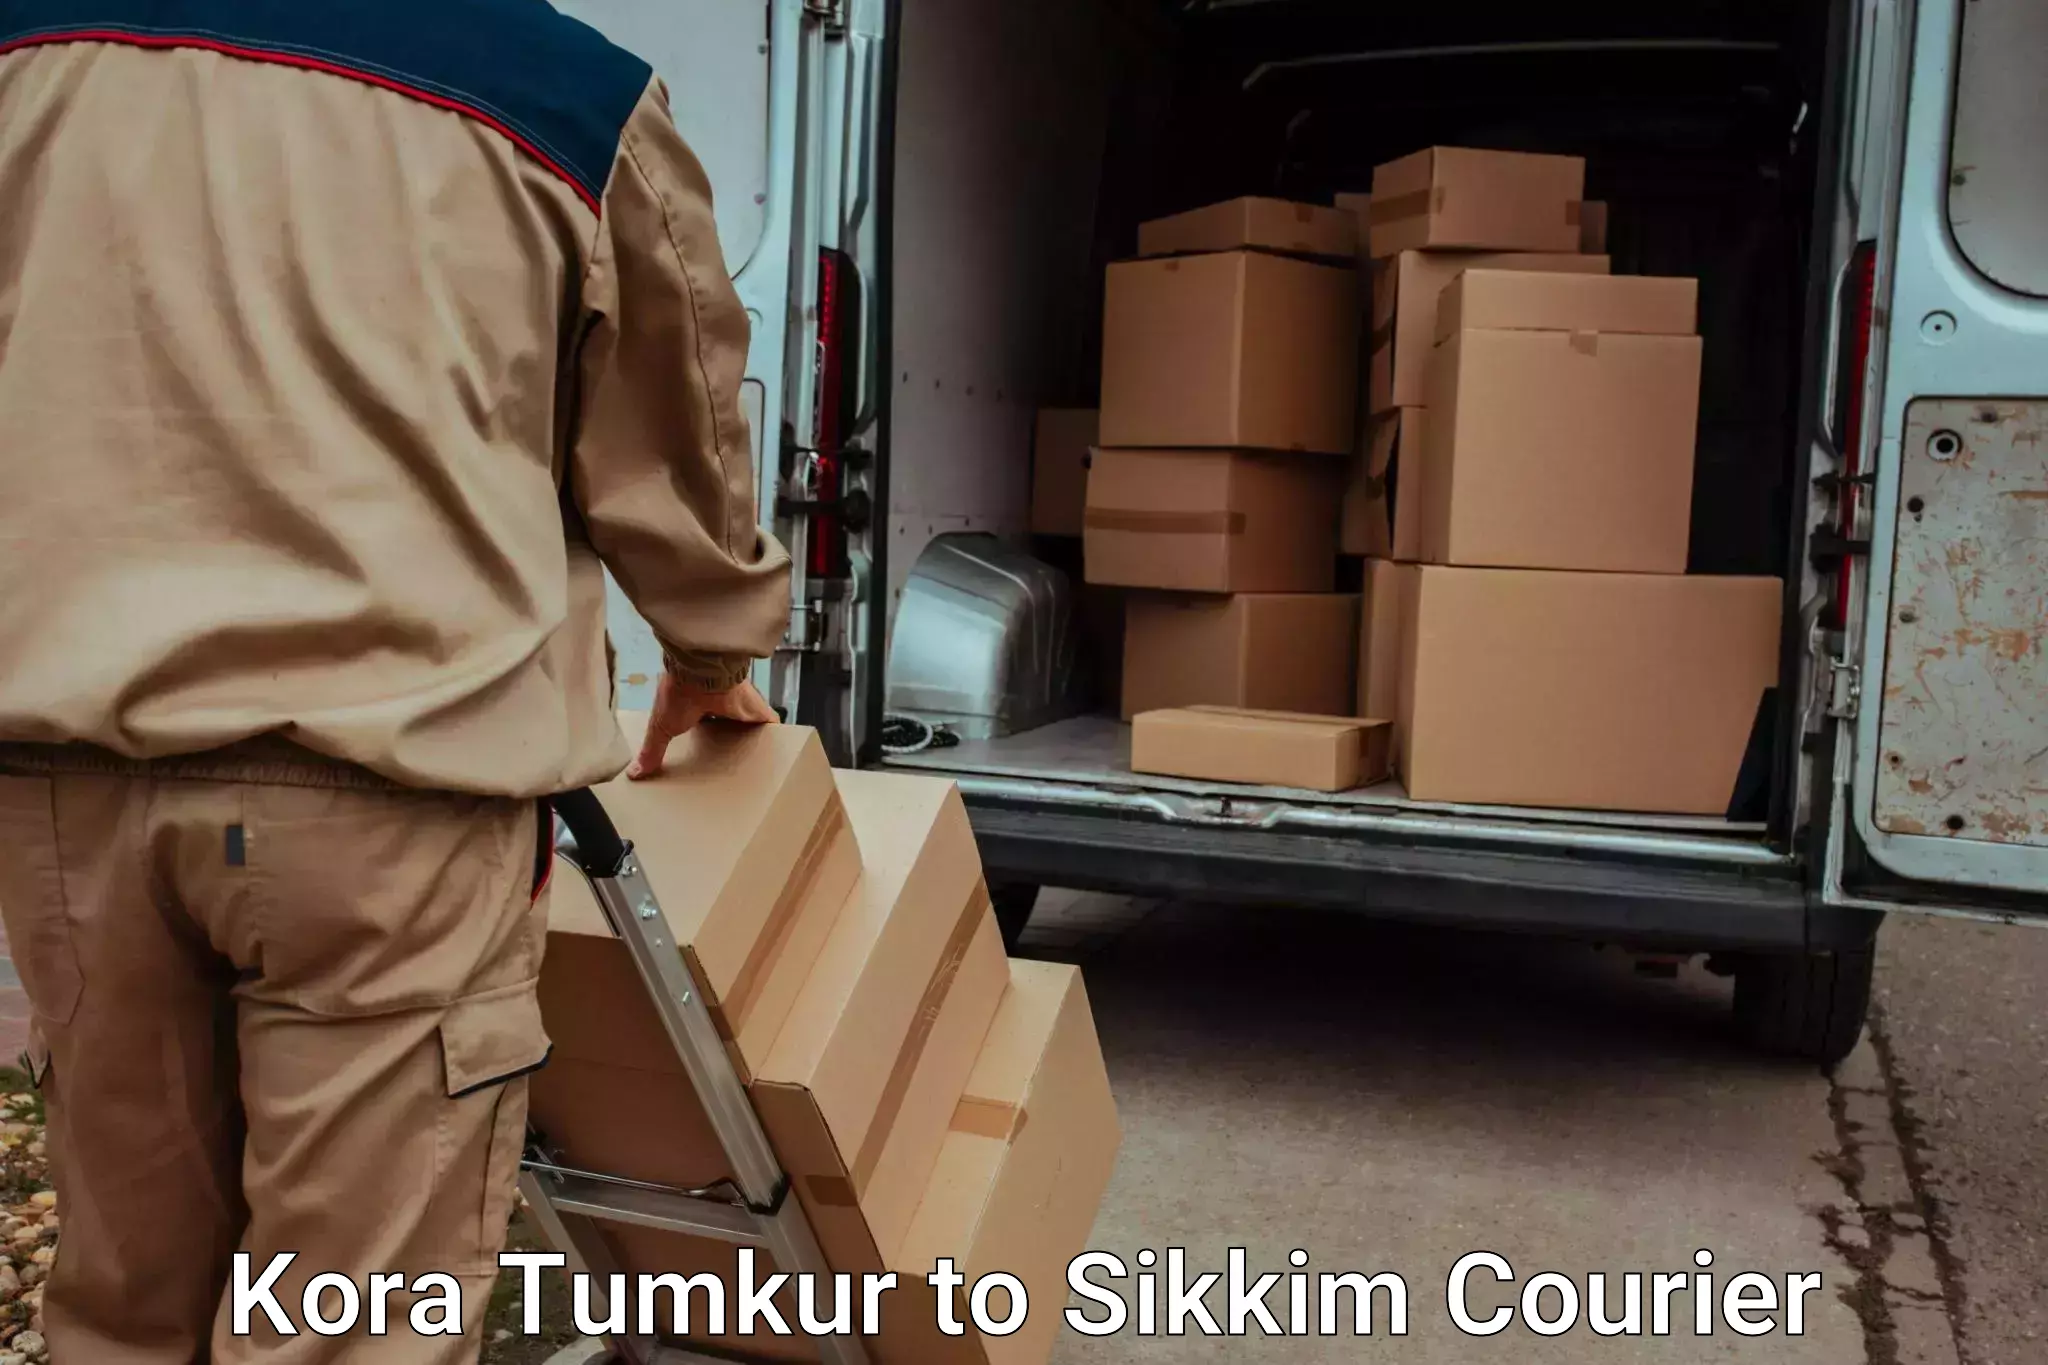 Baggage transport professionals in Kora Tumkur to Geyzing